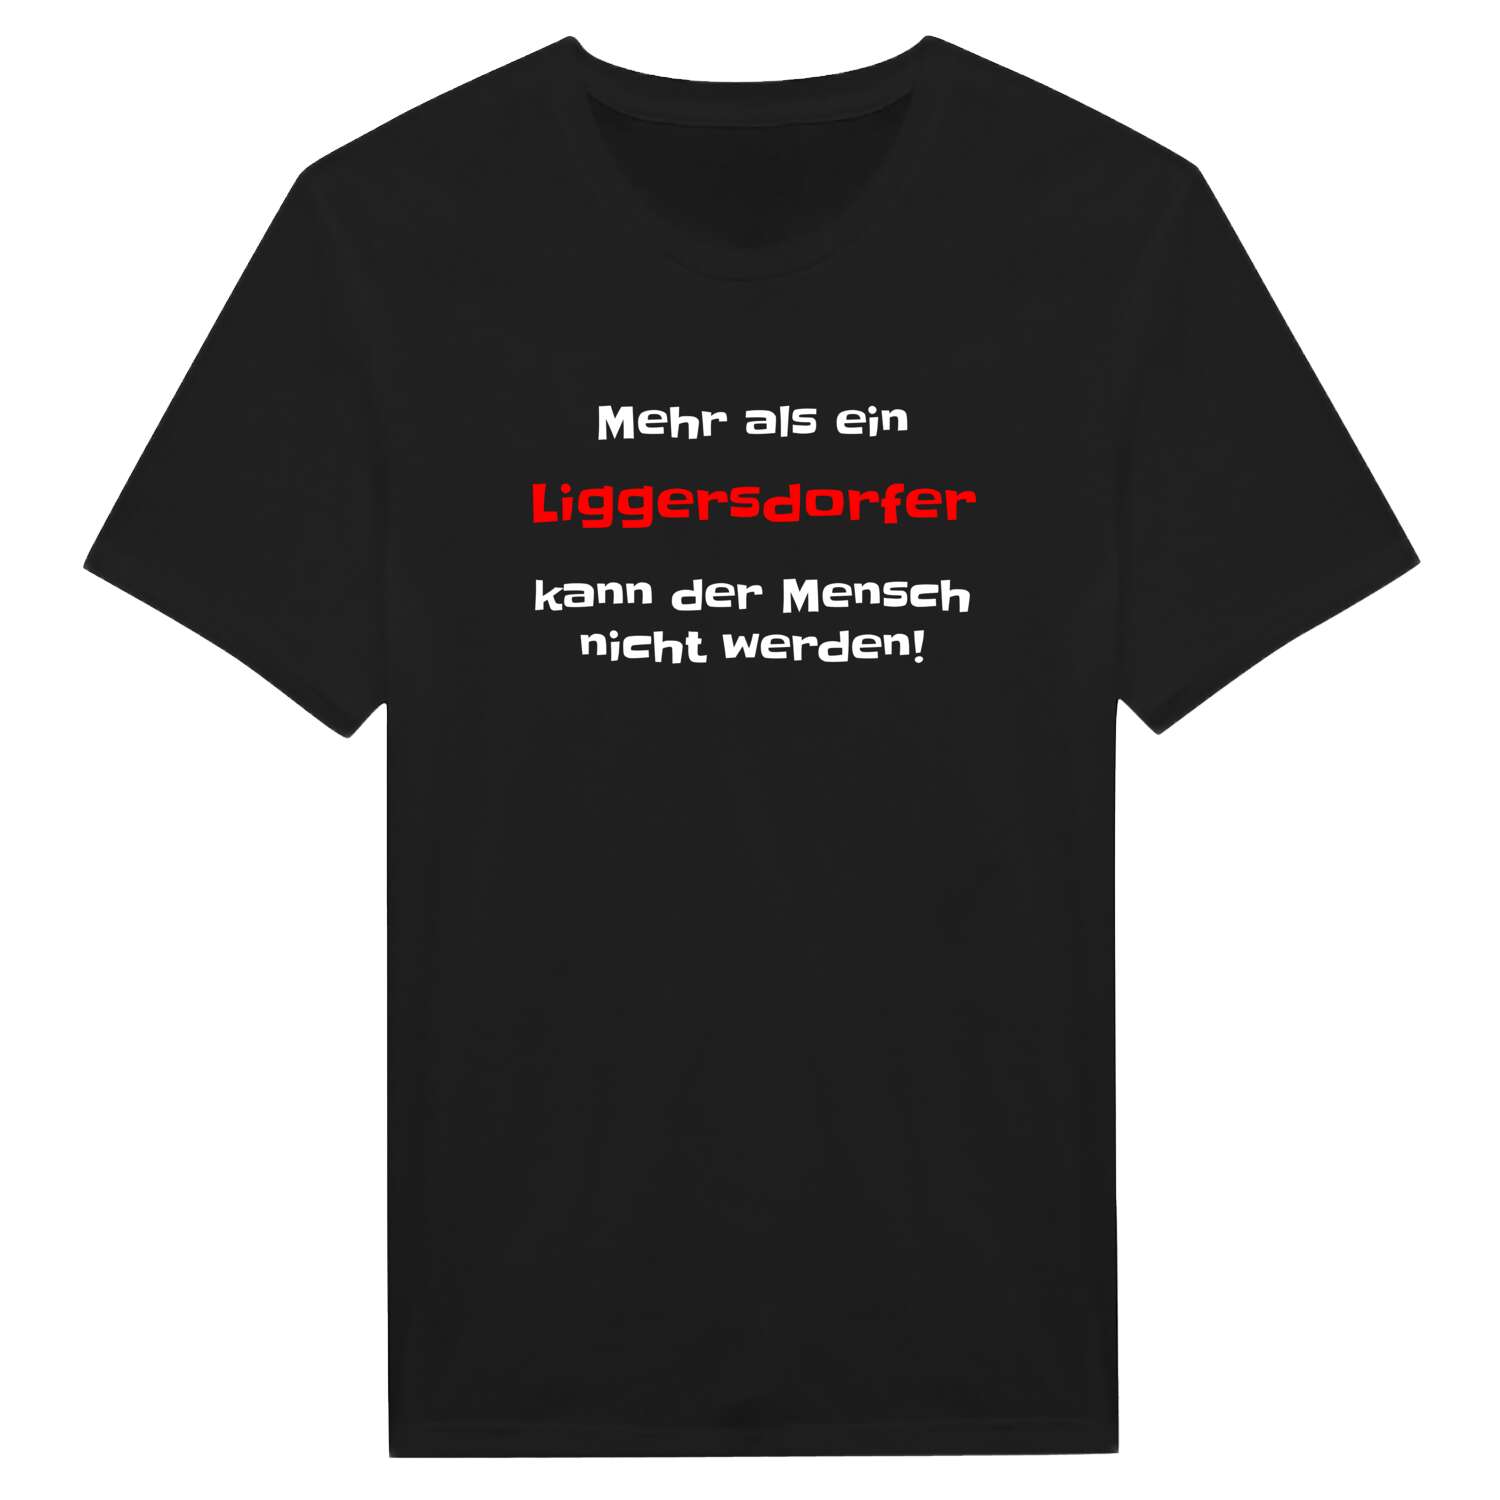 Liggersdorf T-Shirt »Mehr als ein«